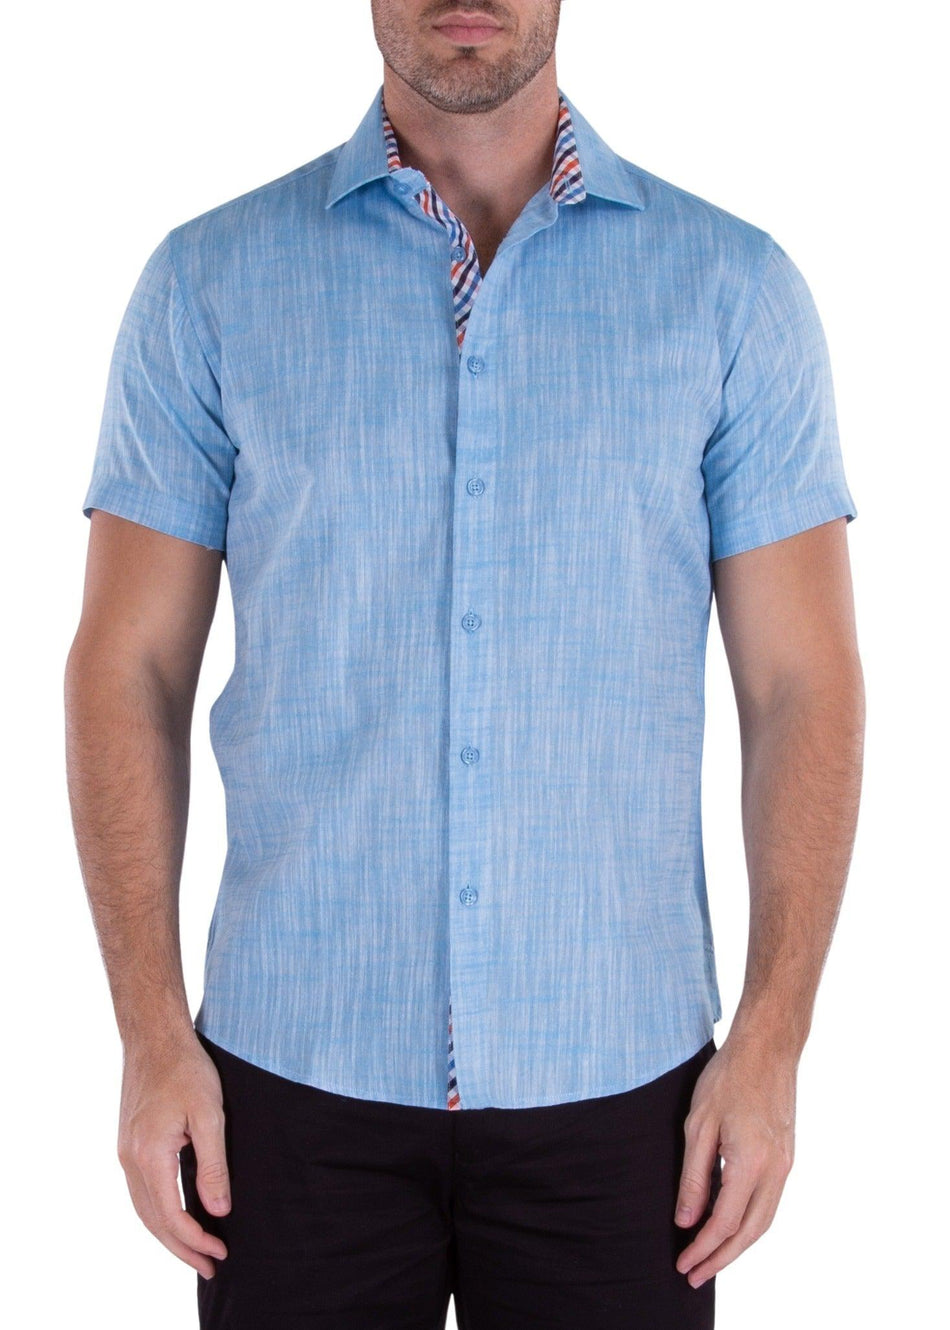 Classic Linen Short Sleeve Button Up Dress Shirt Turquoise